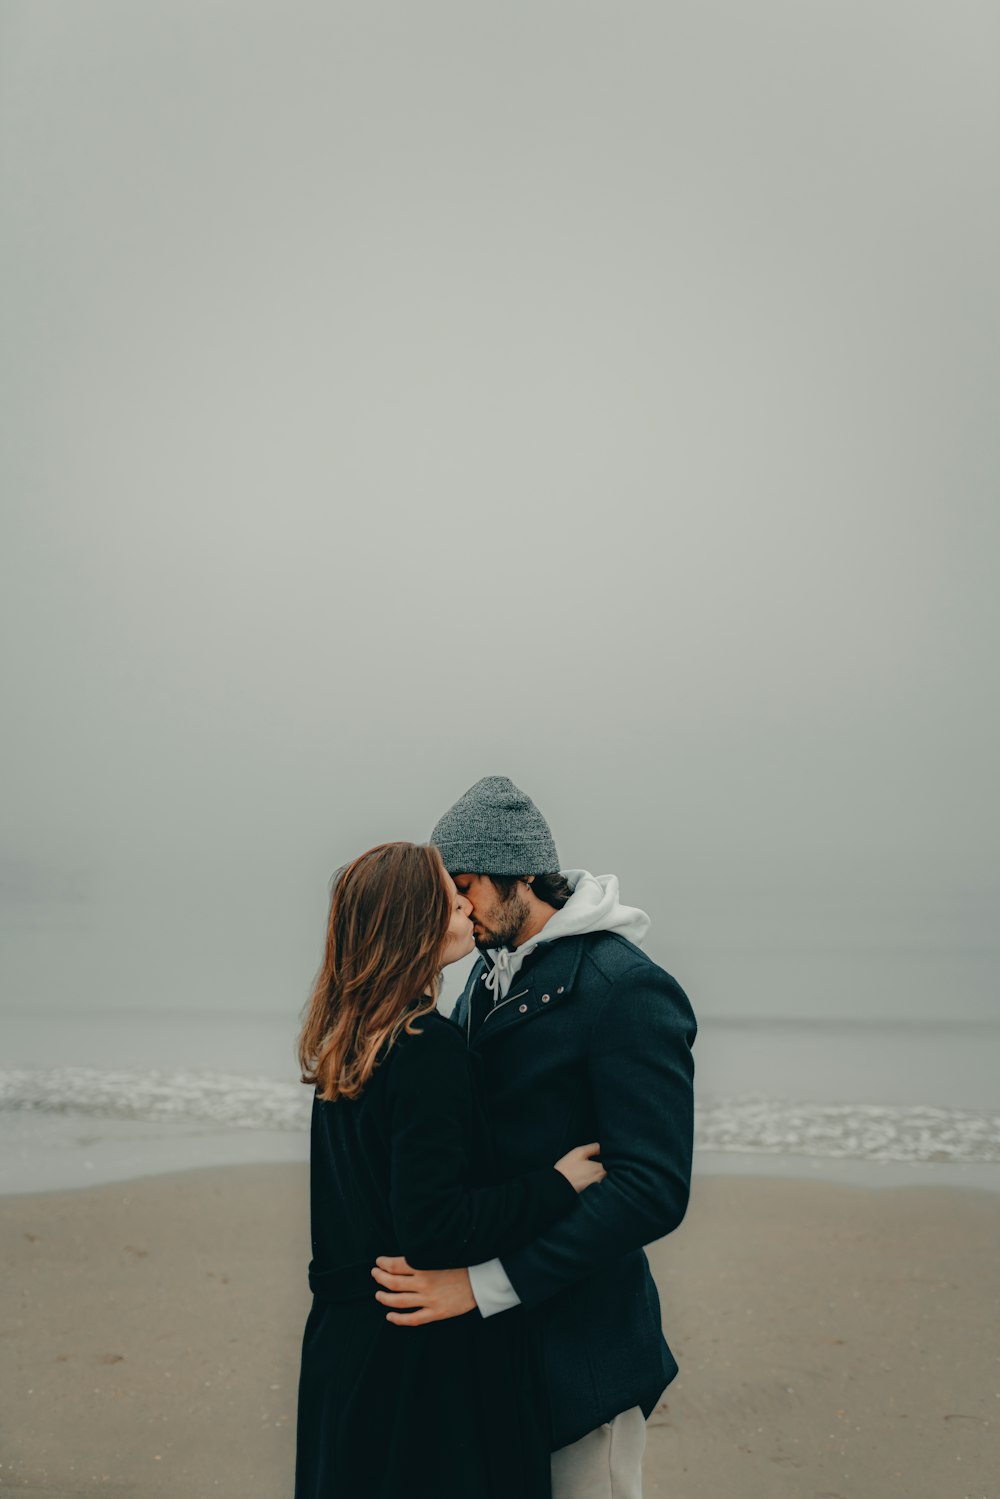 Un couple s’embrassant sur la plage face à l’océan